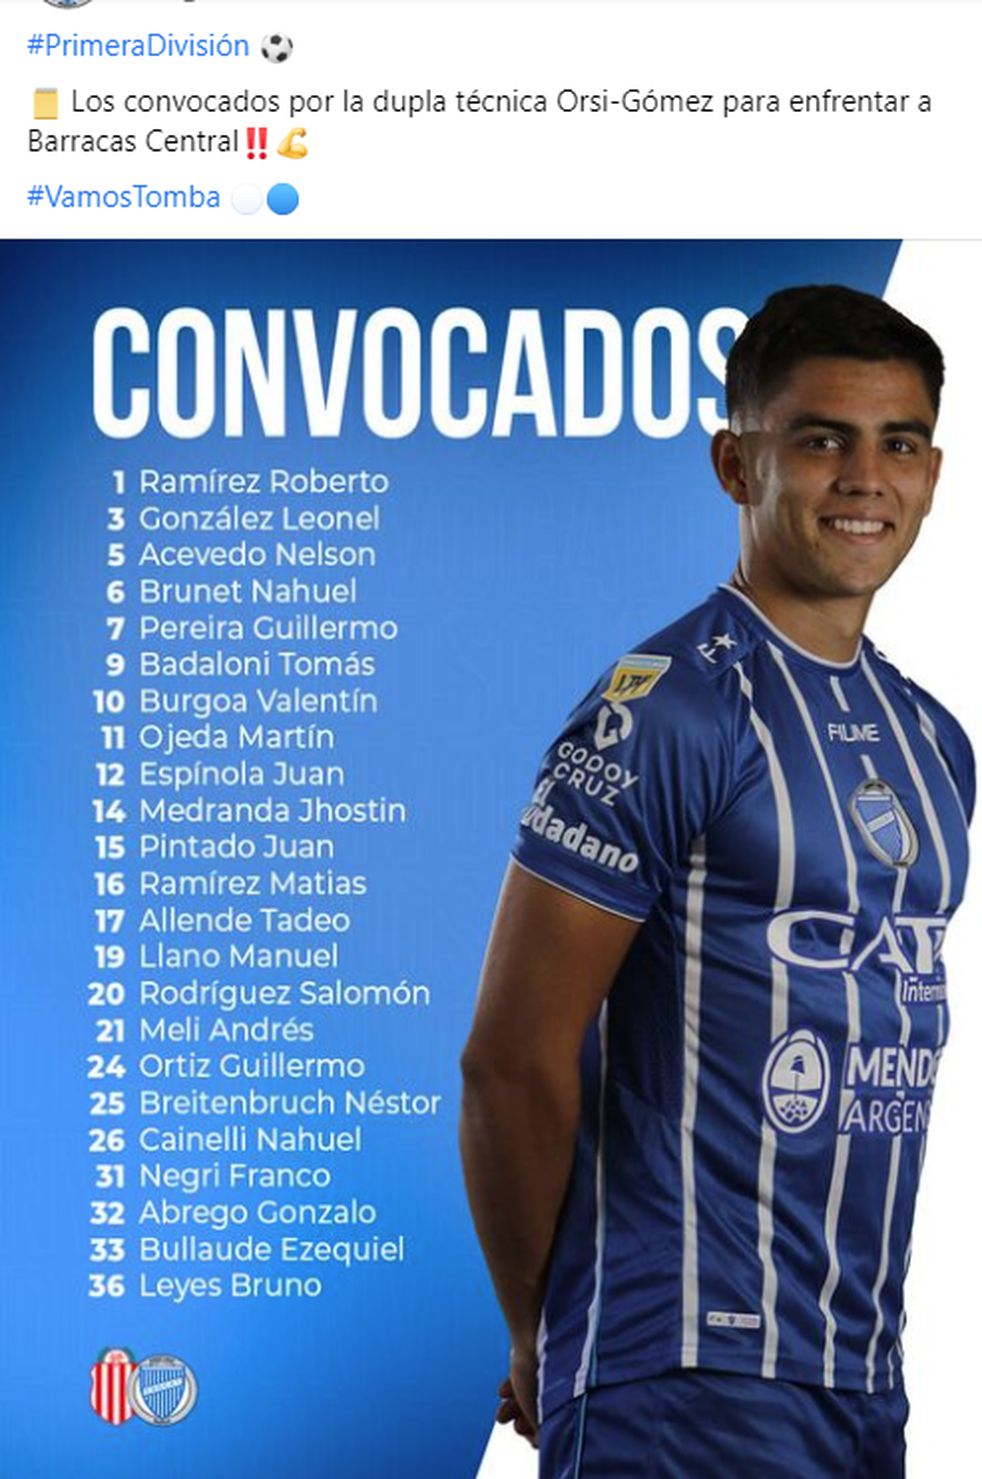 El tomba confirmó la lista de jugadores convocados para enfrentar a Barracas Central.